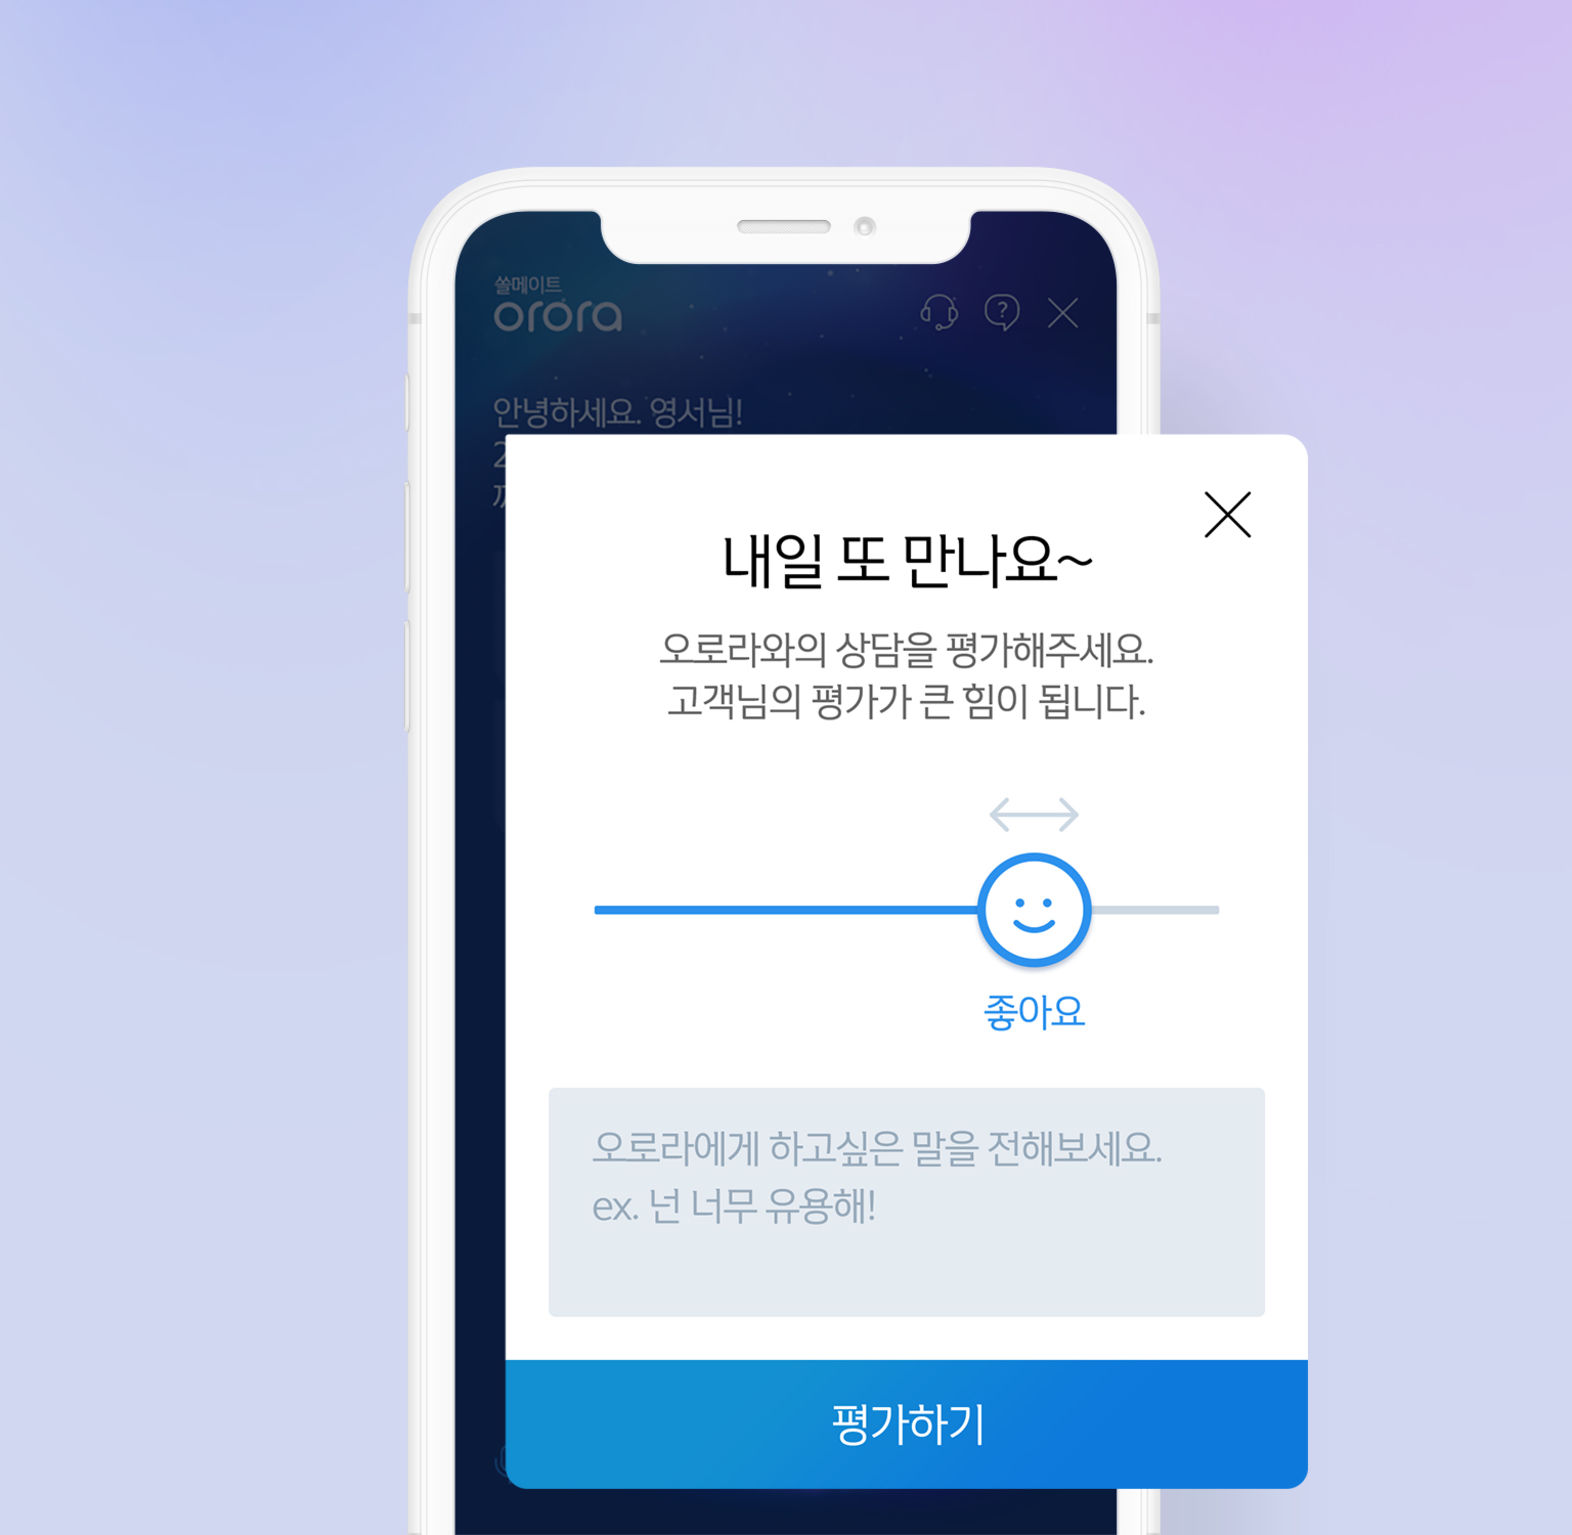 Shinhan Bank Chatbot ORORA